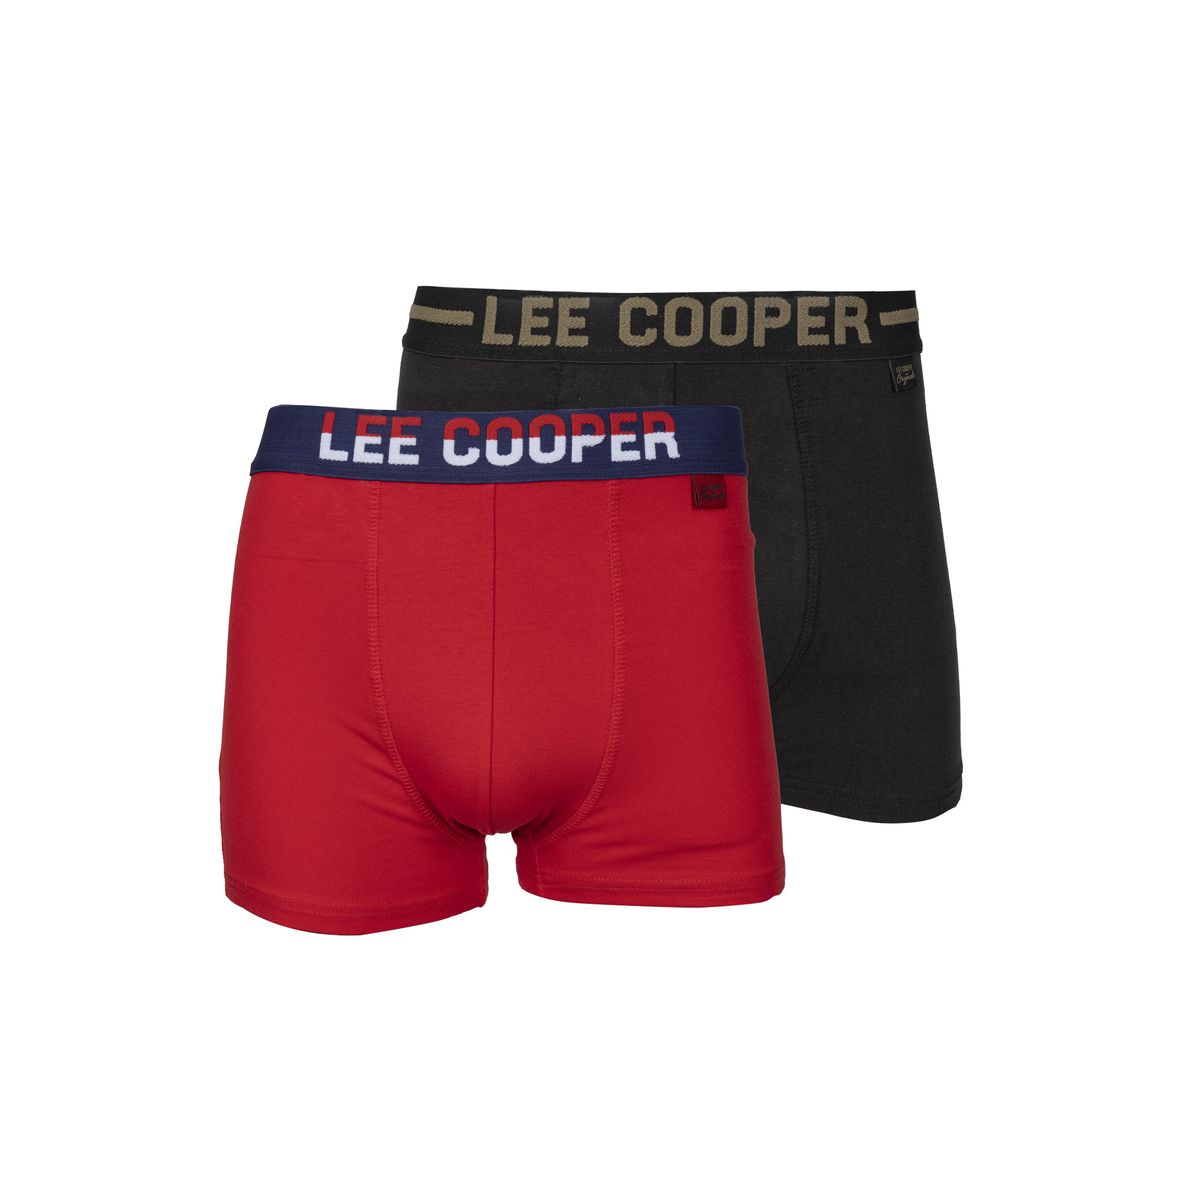 XL Boxers Lee Cooper Men black Boxers LEE COOPER 4 Men Clothing Lee Cooper Men Underwear & Sleepwear Lee Cooper Men Underwear Lee Cooper Men Boxers Lee Cooper Men 